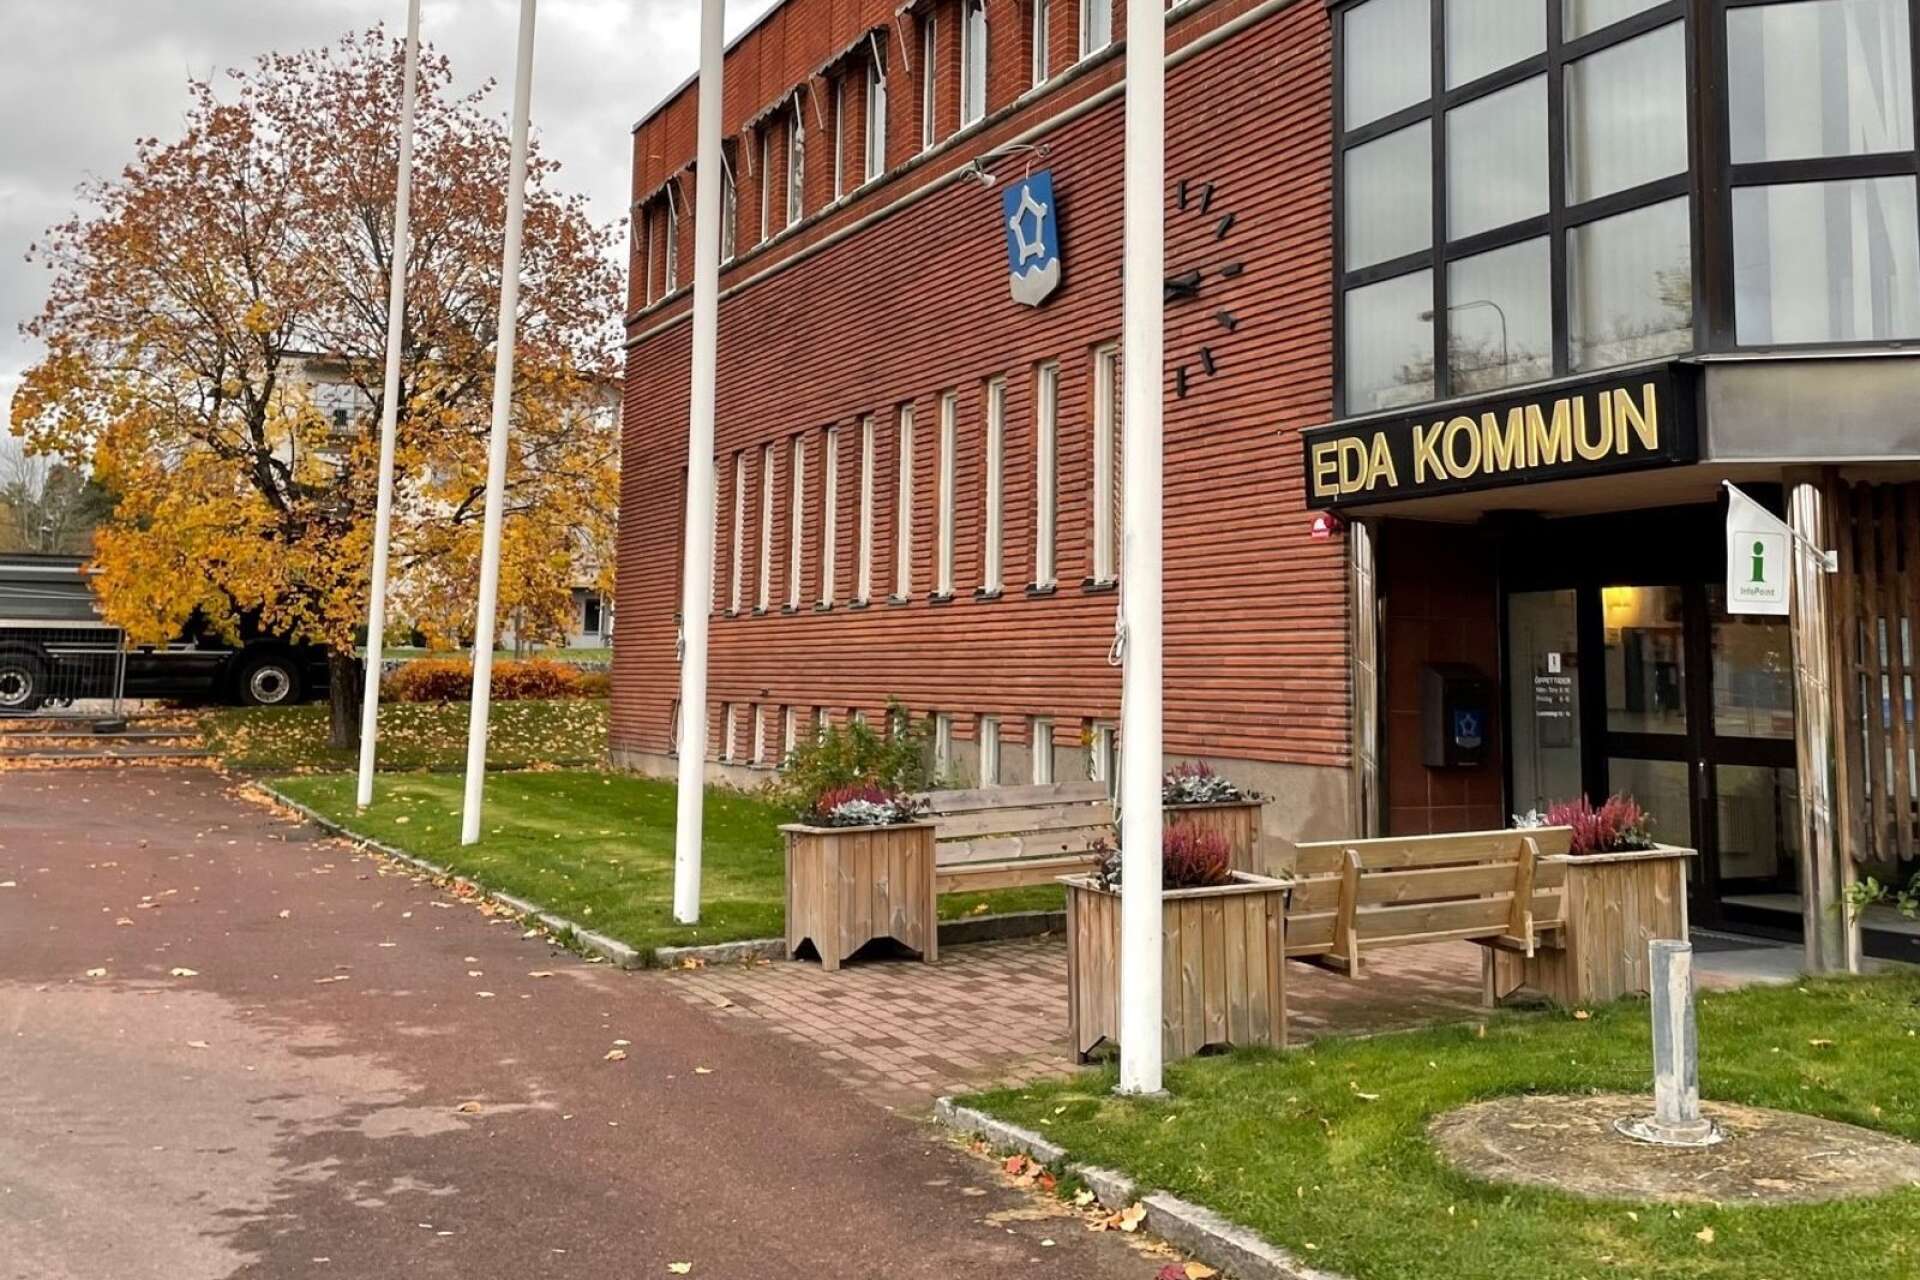 Eda kommun har samverkan med andra kommuner i olika former. Bland annat har man haft avtal med Årjängs kommun om en deltidstjänst som miljöchef. 